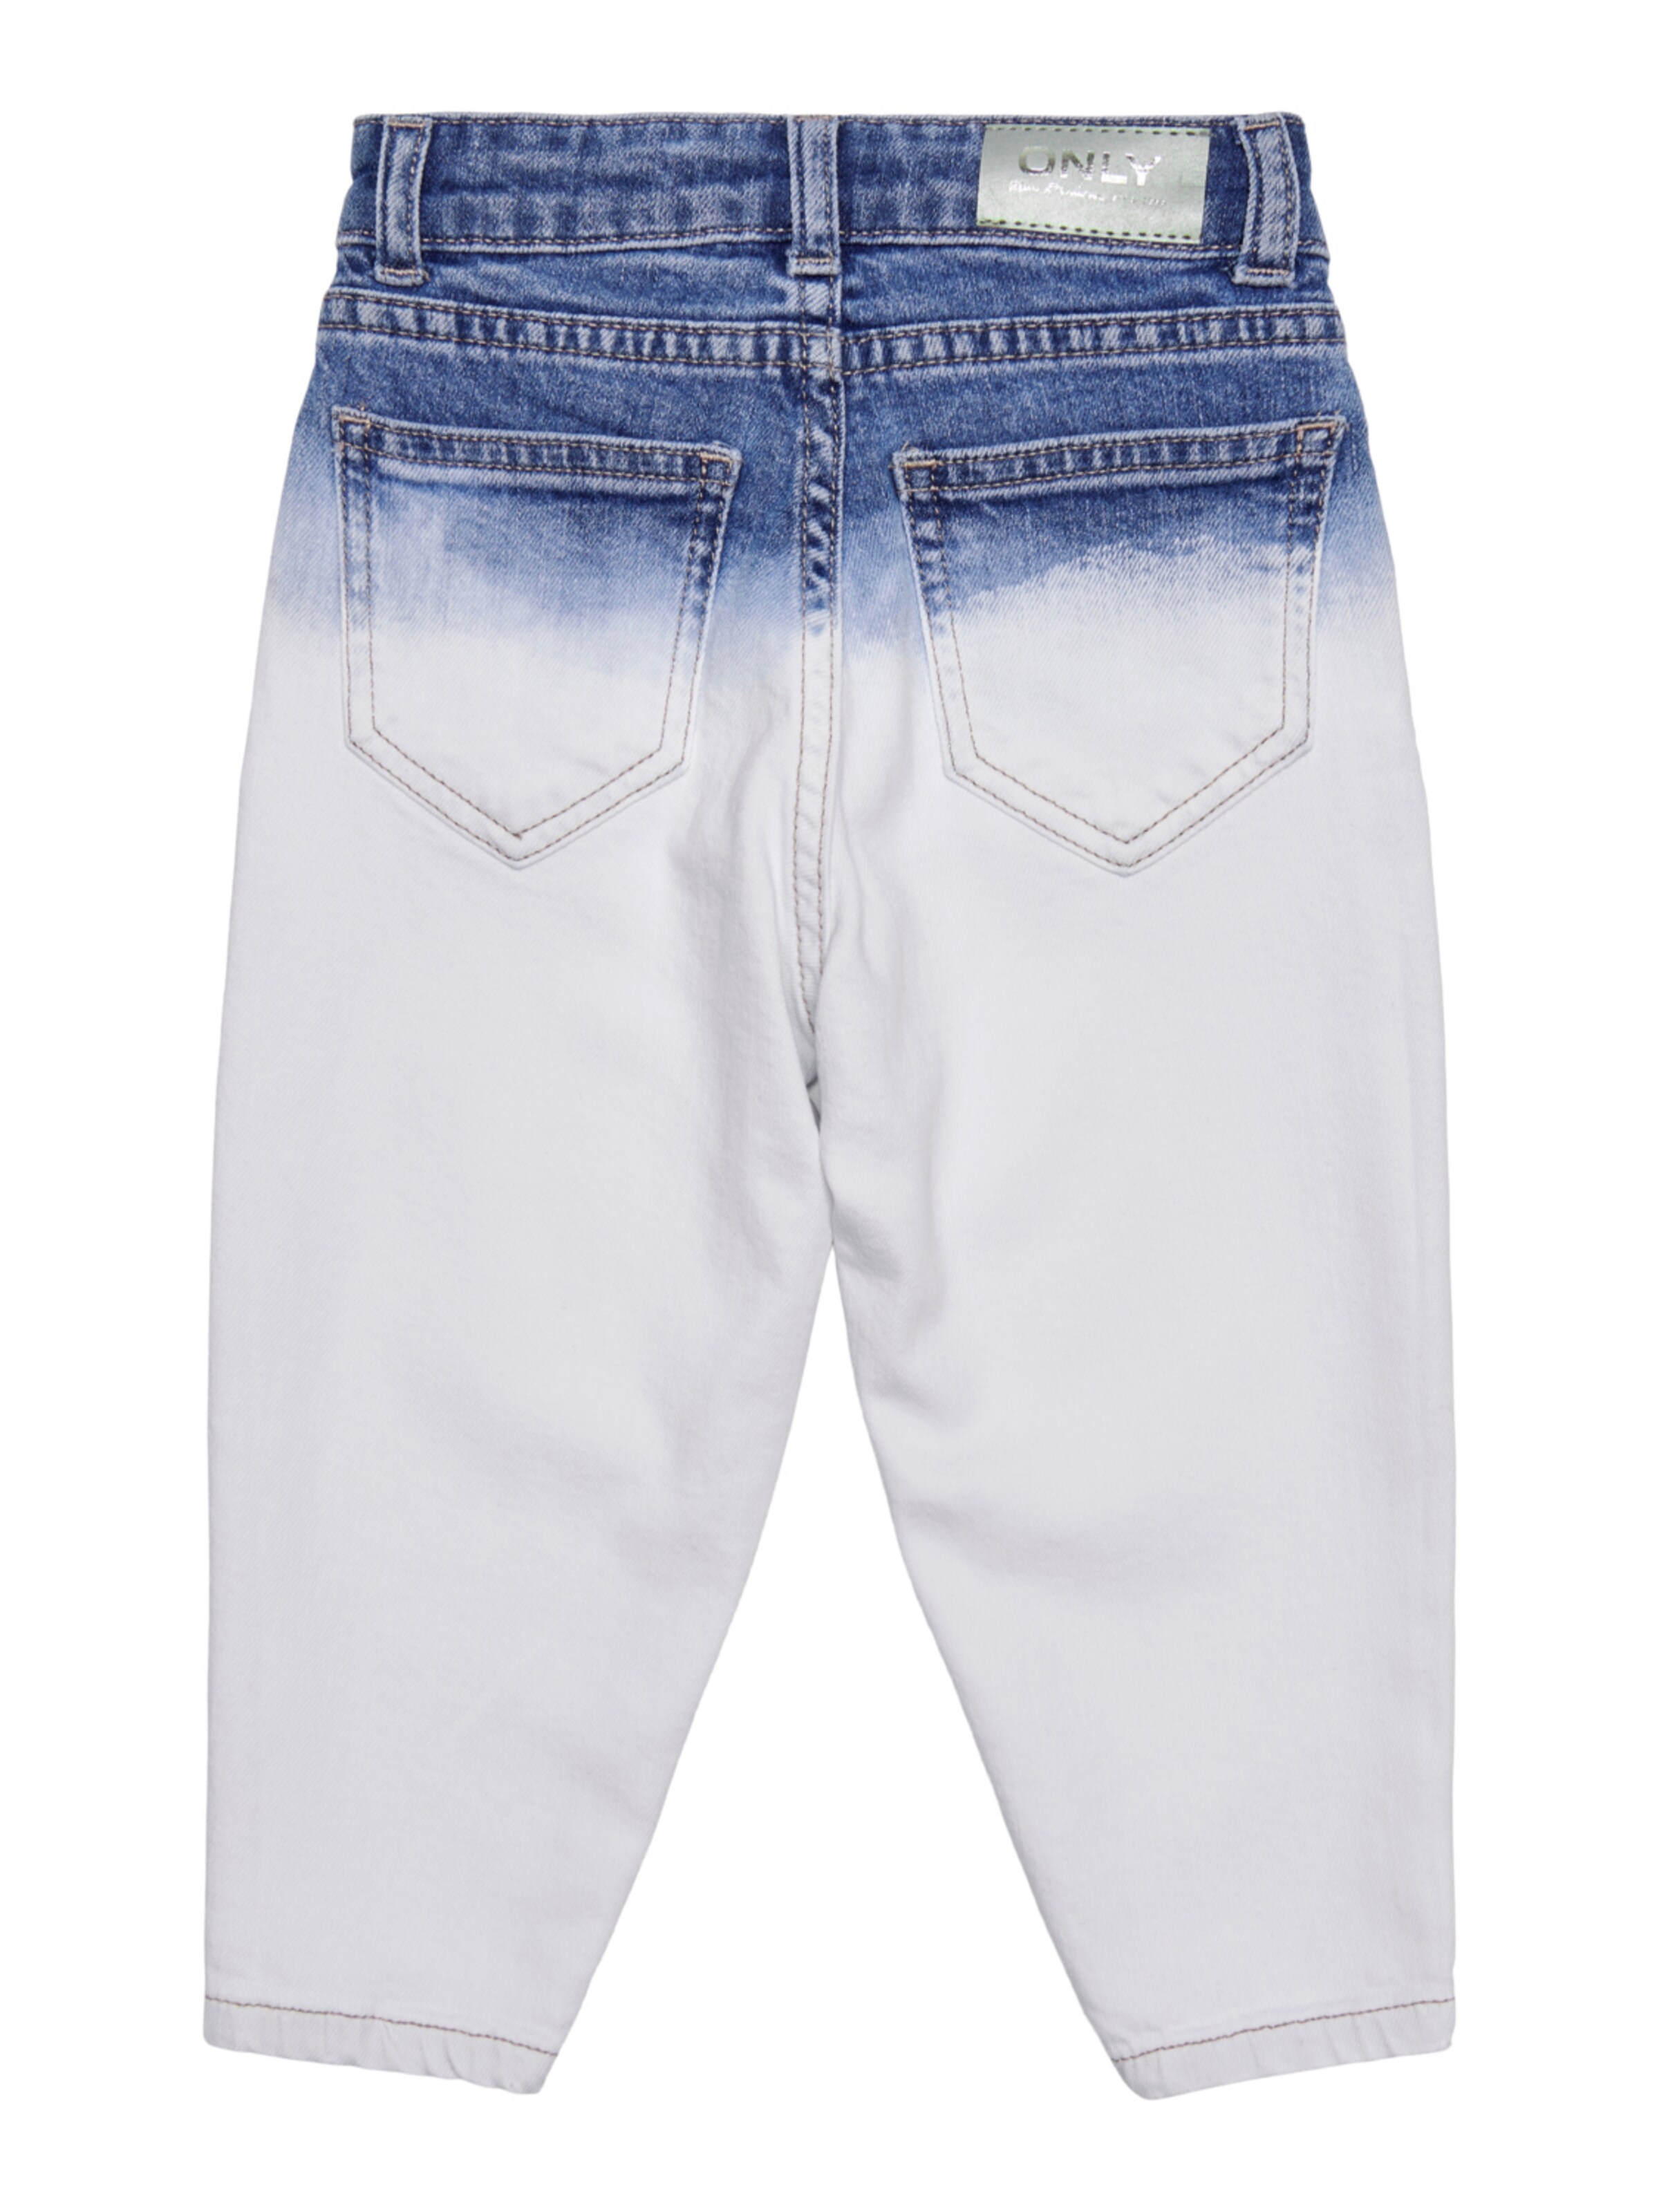 Kinder Bekleidung KIDS MINI GIRL Jeans in Blau, Weiß - VW52264